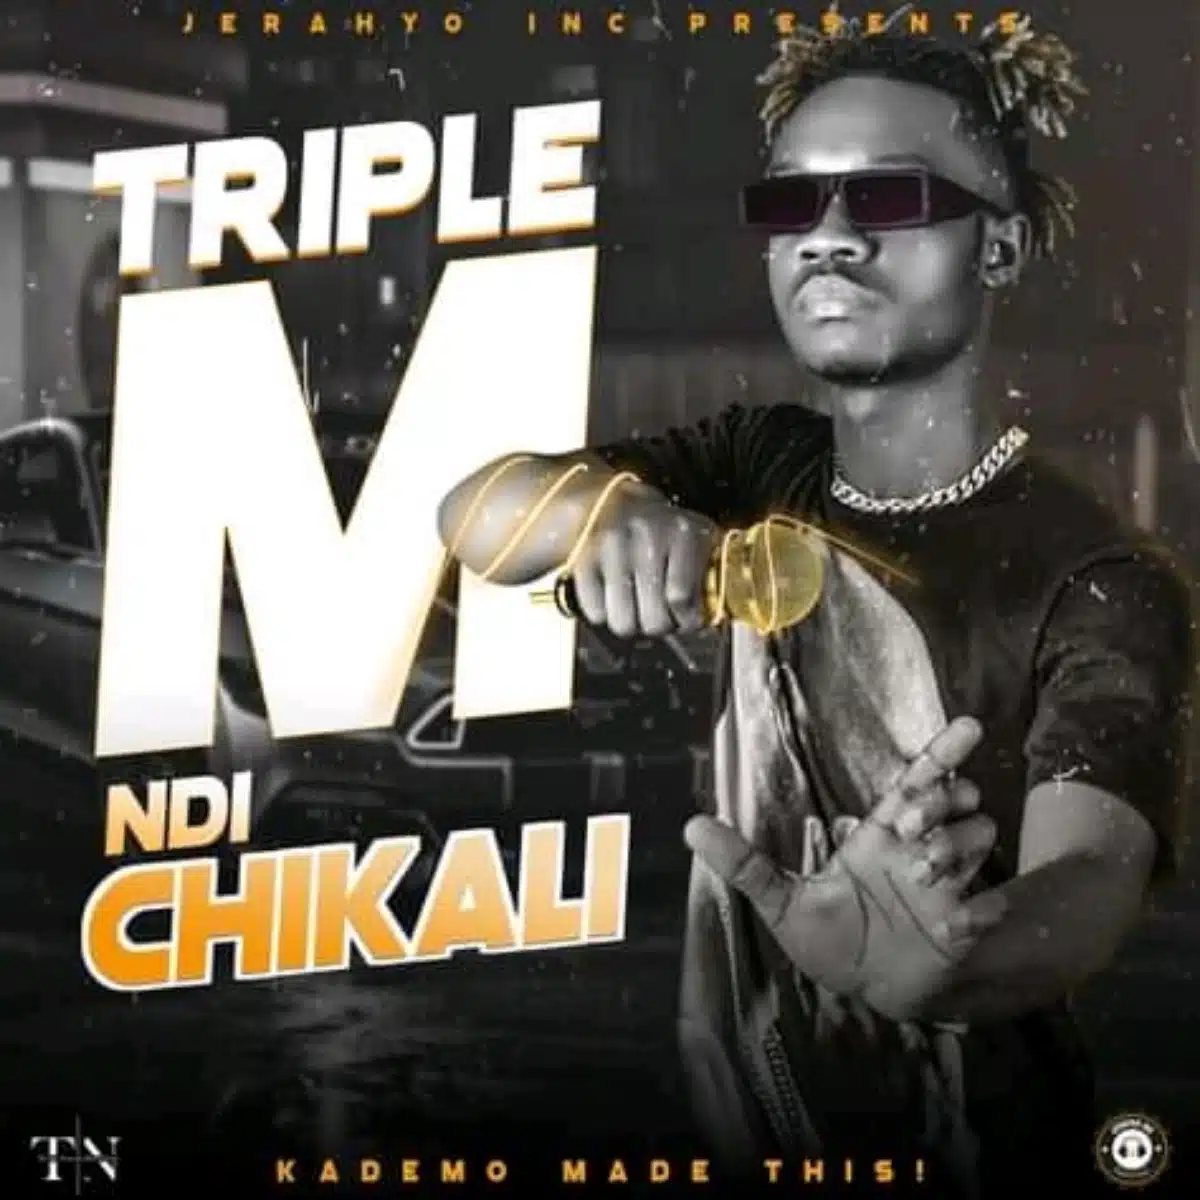 DOWNLOAD: Triple M – “Ndi ChiKali” Mp3